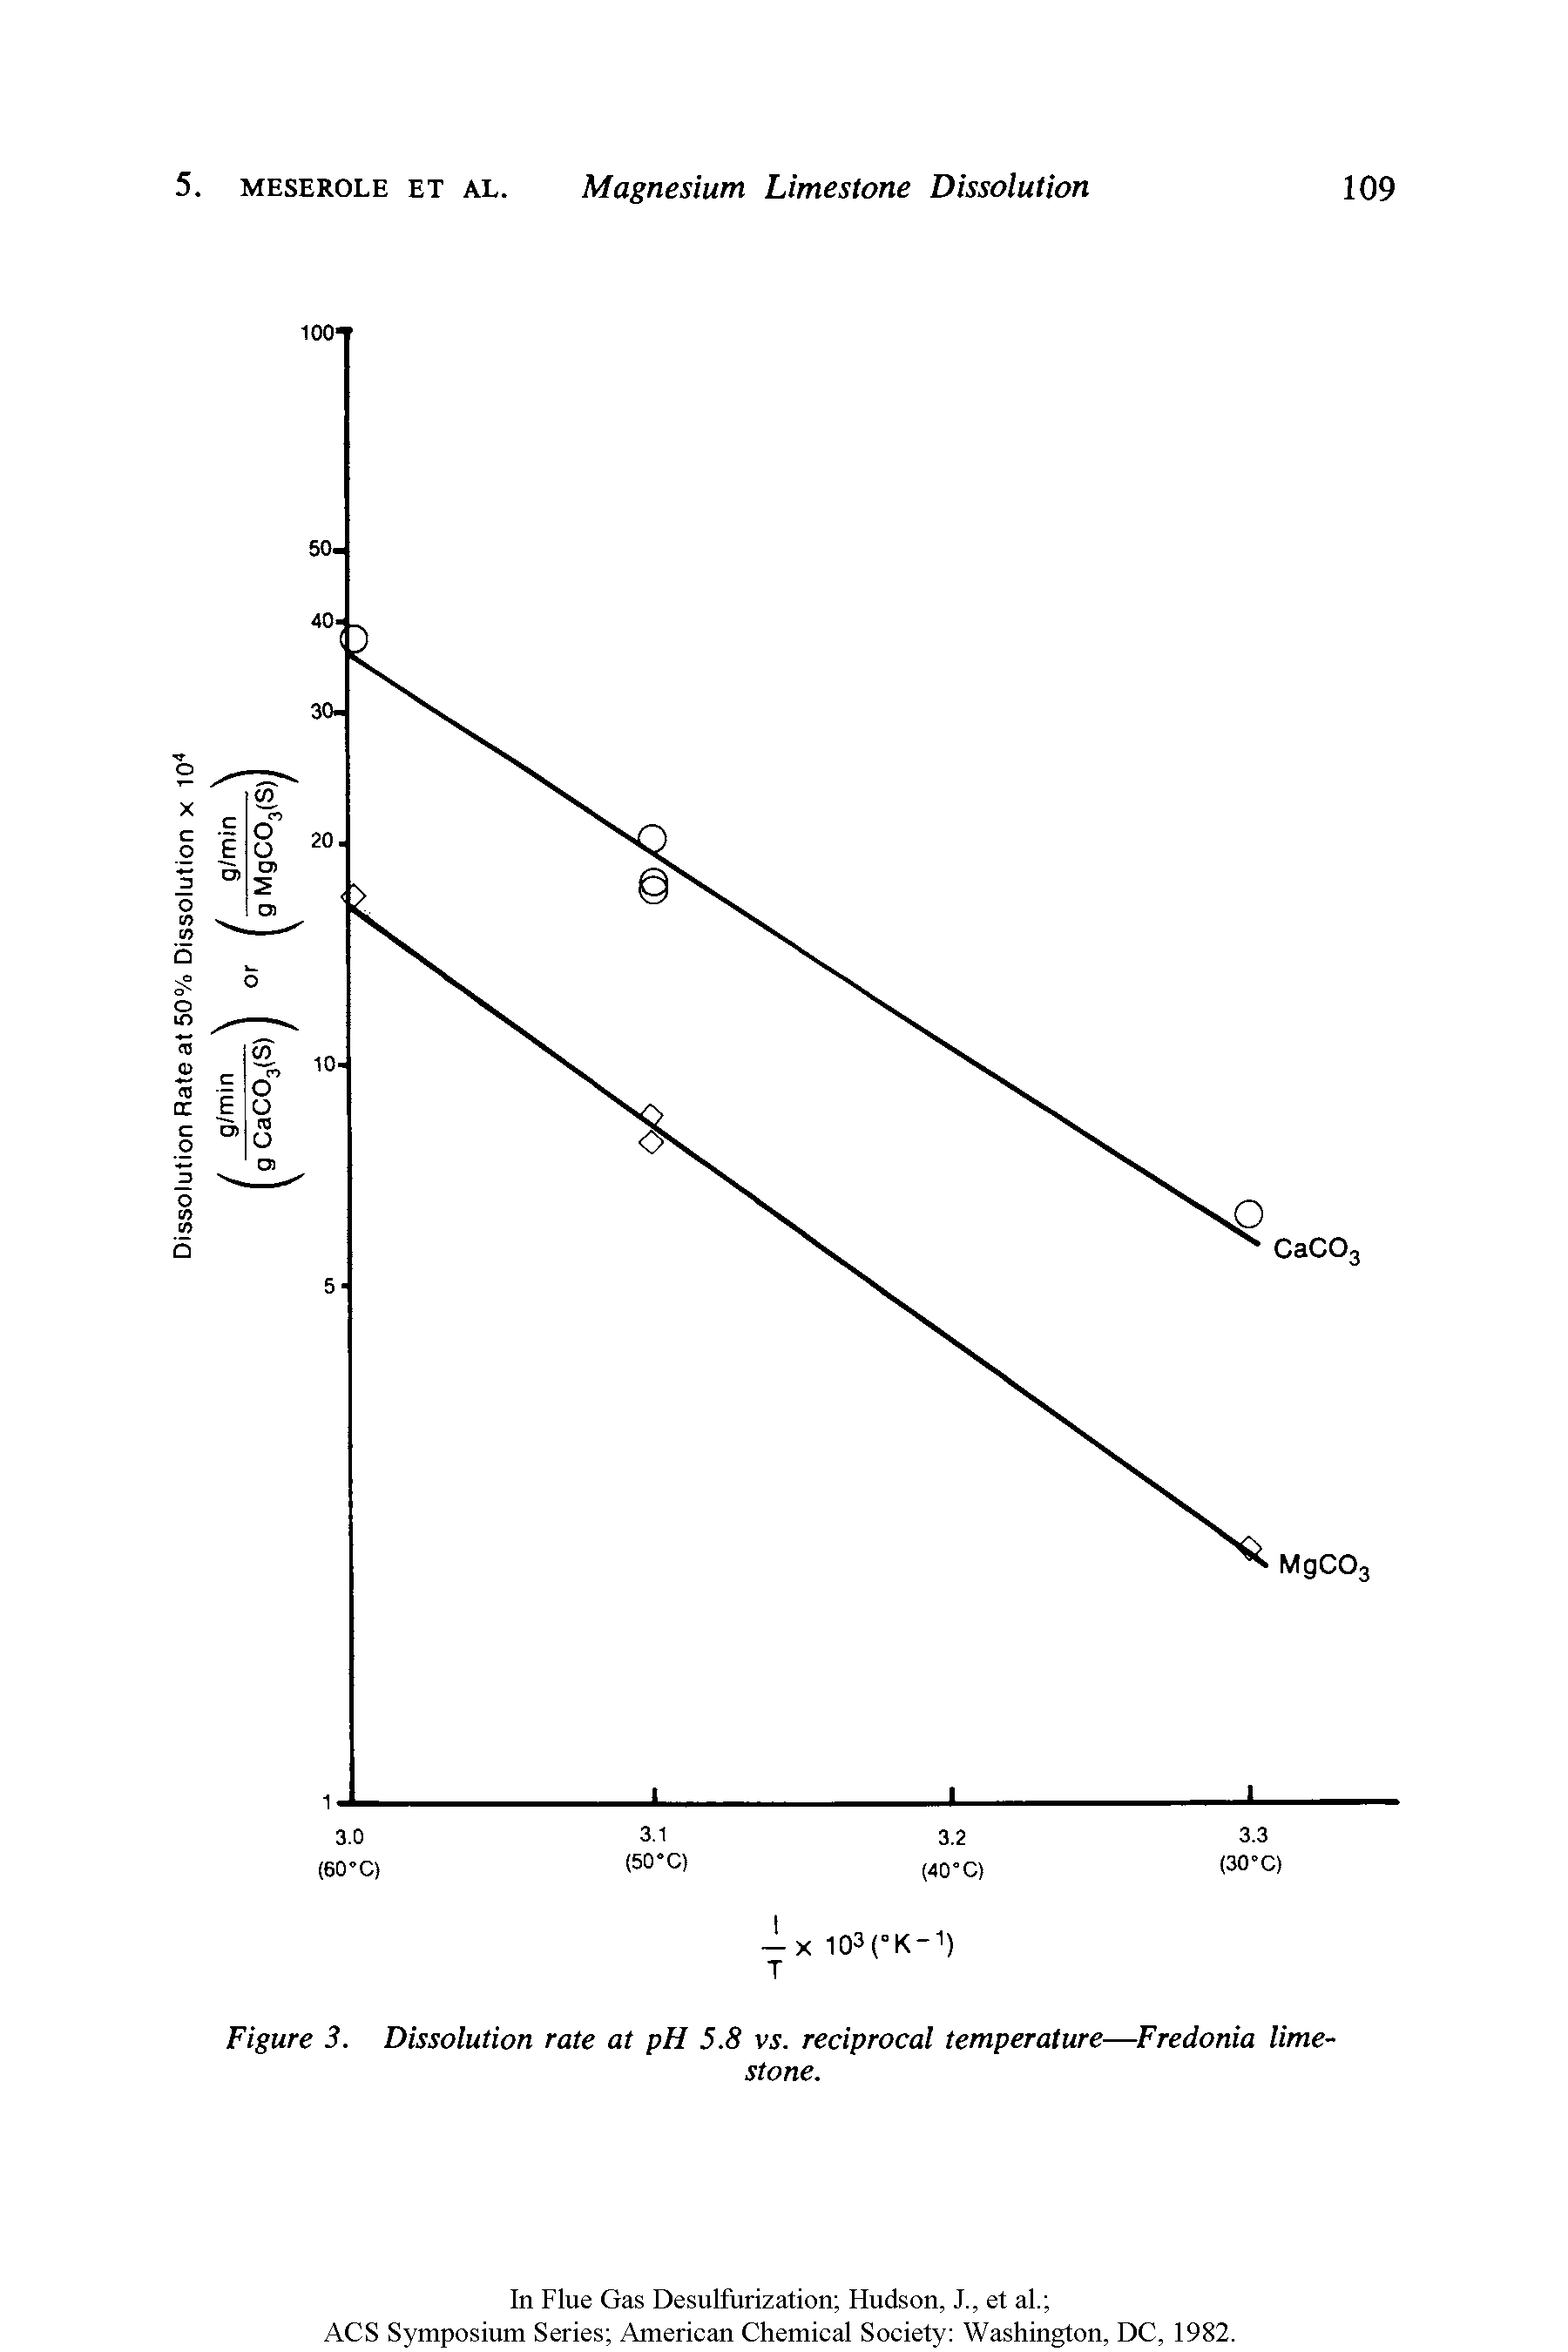 Figure 3. Dissolution rate at pH 5.8 vs. reciprocal temperature—Fredonia limestone.